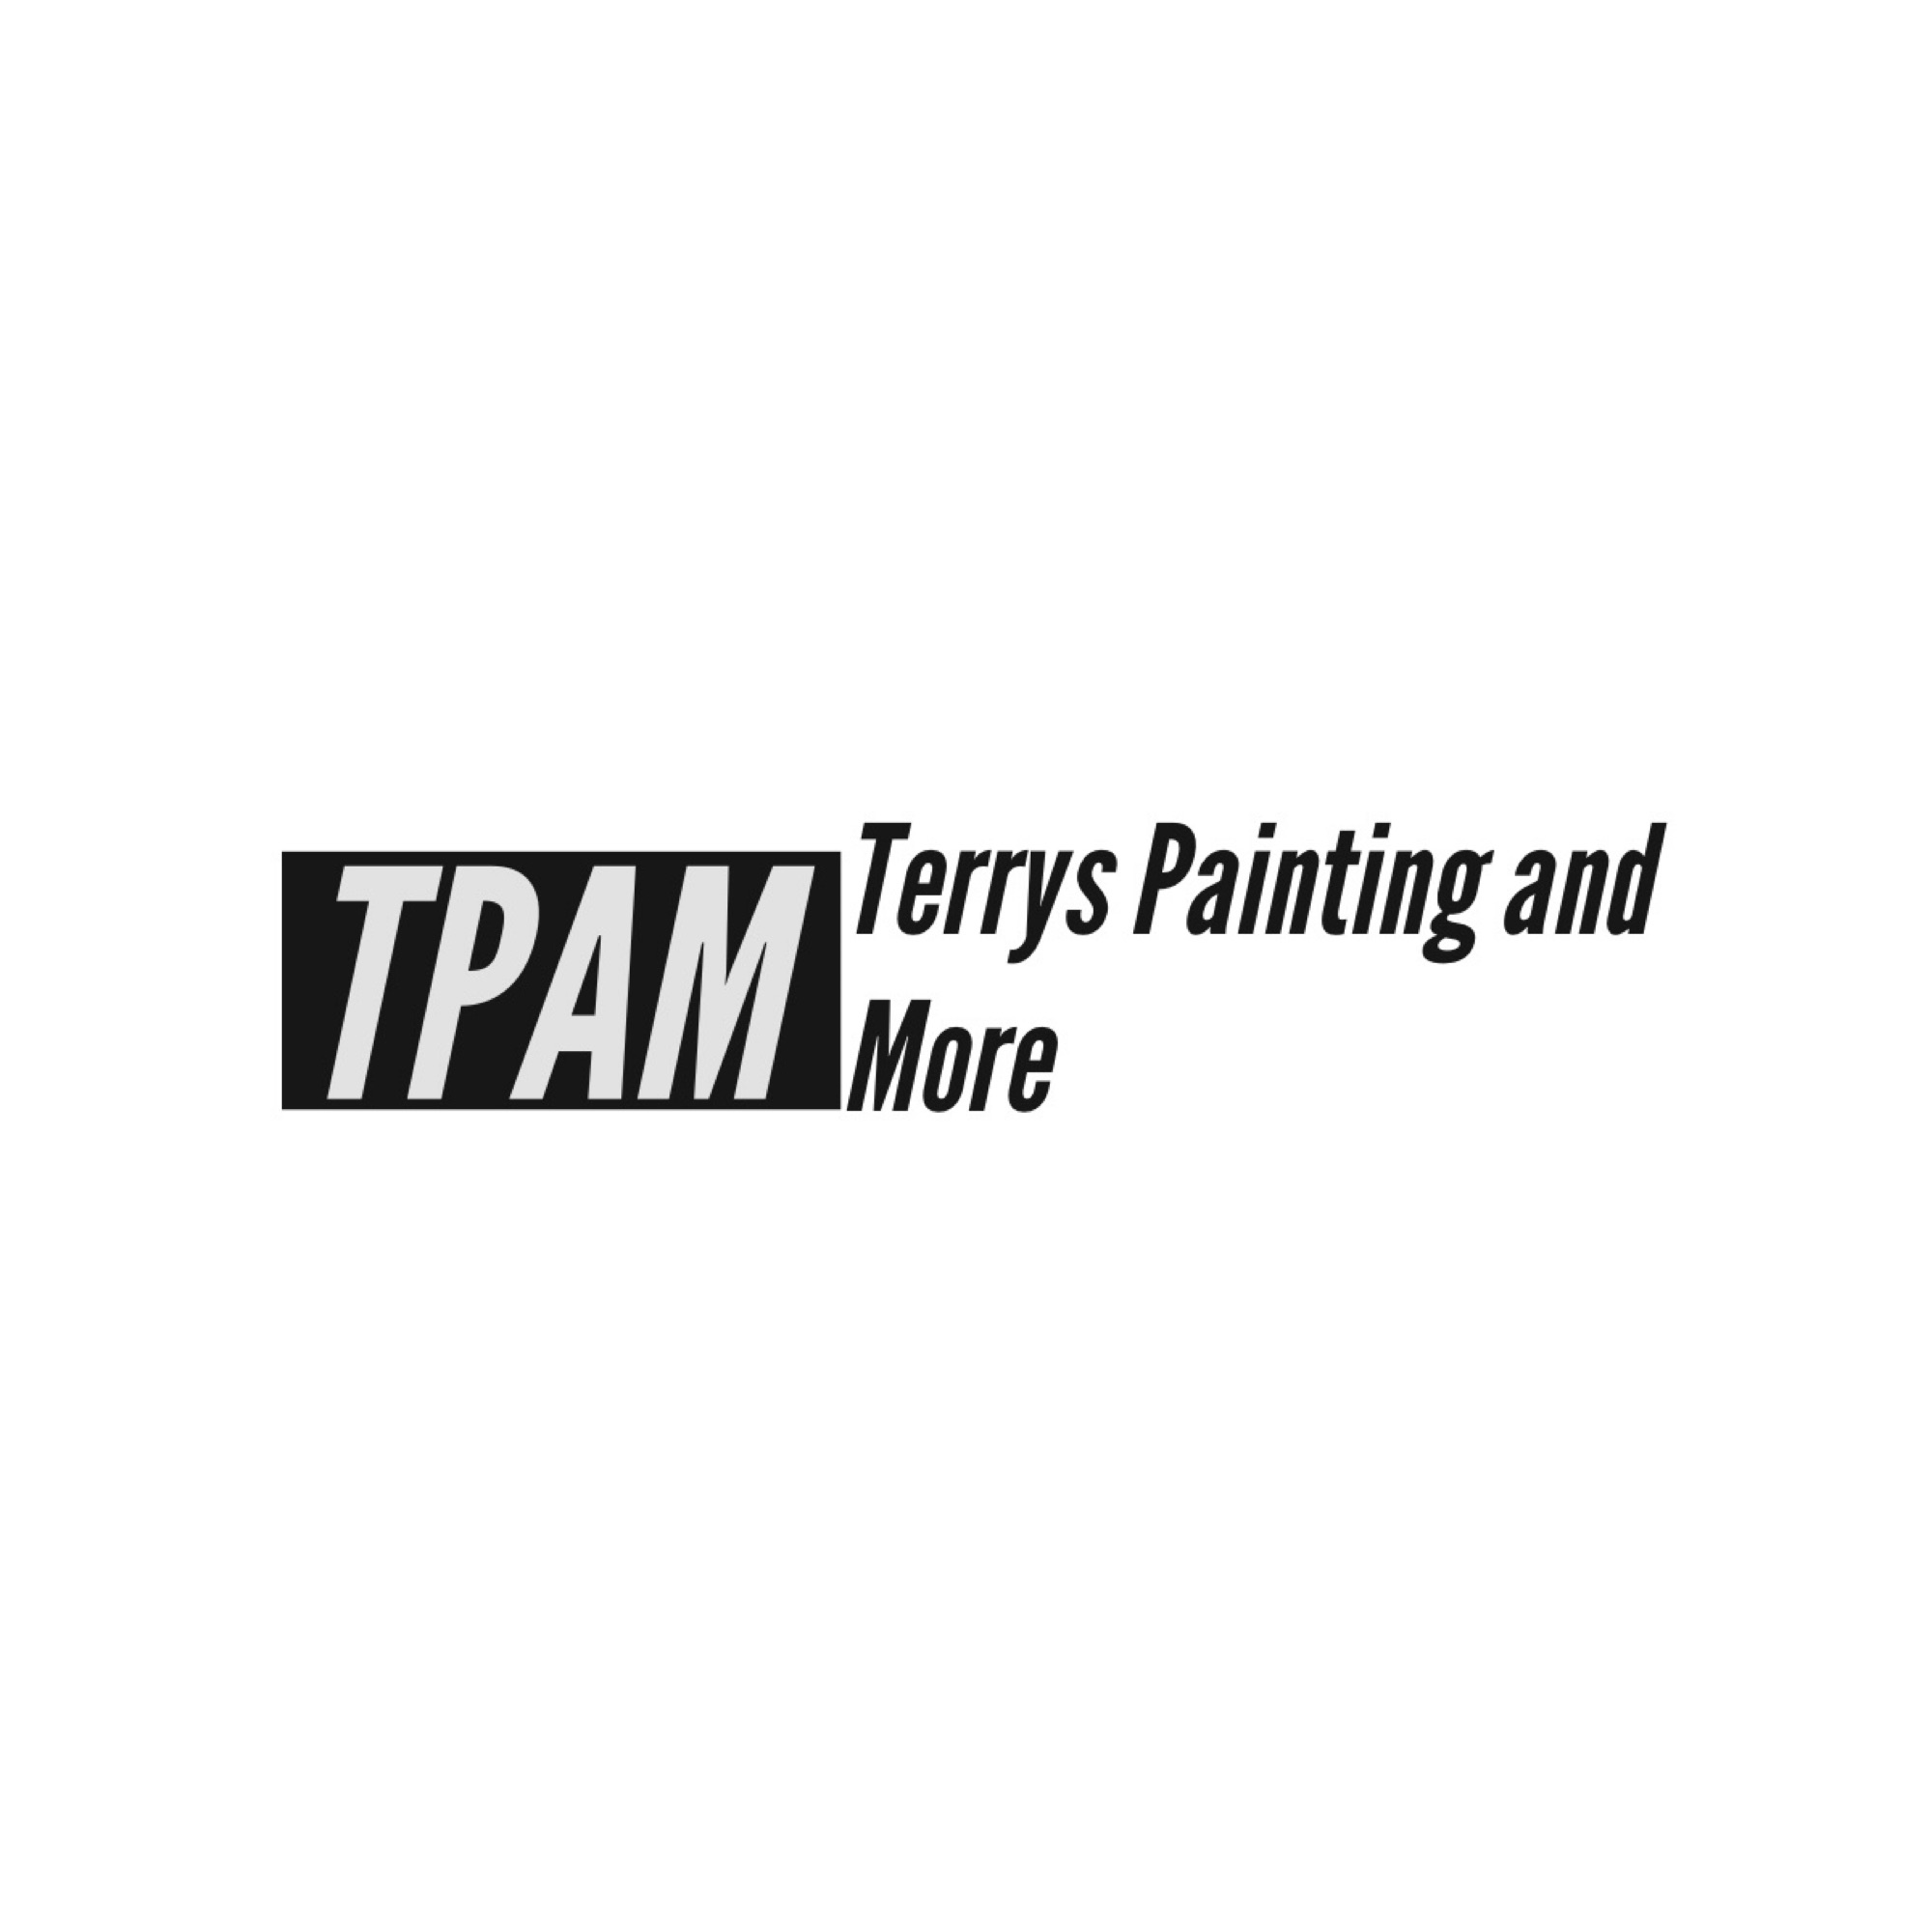 Terrys Painting and More Logo